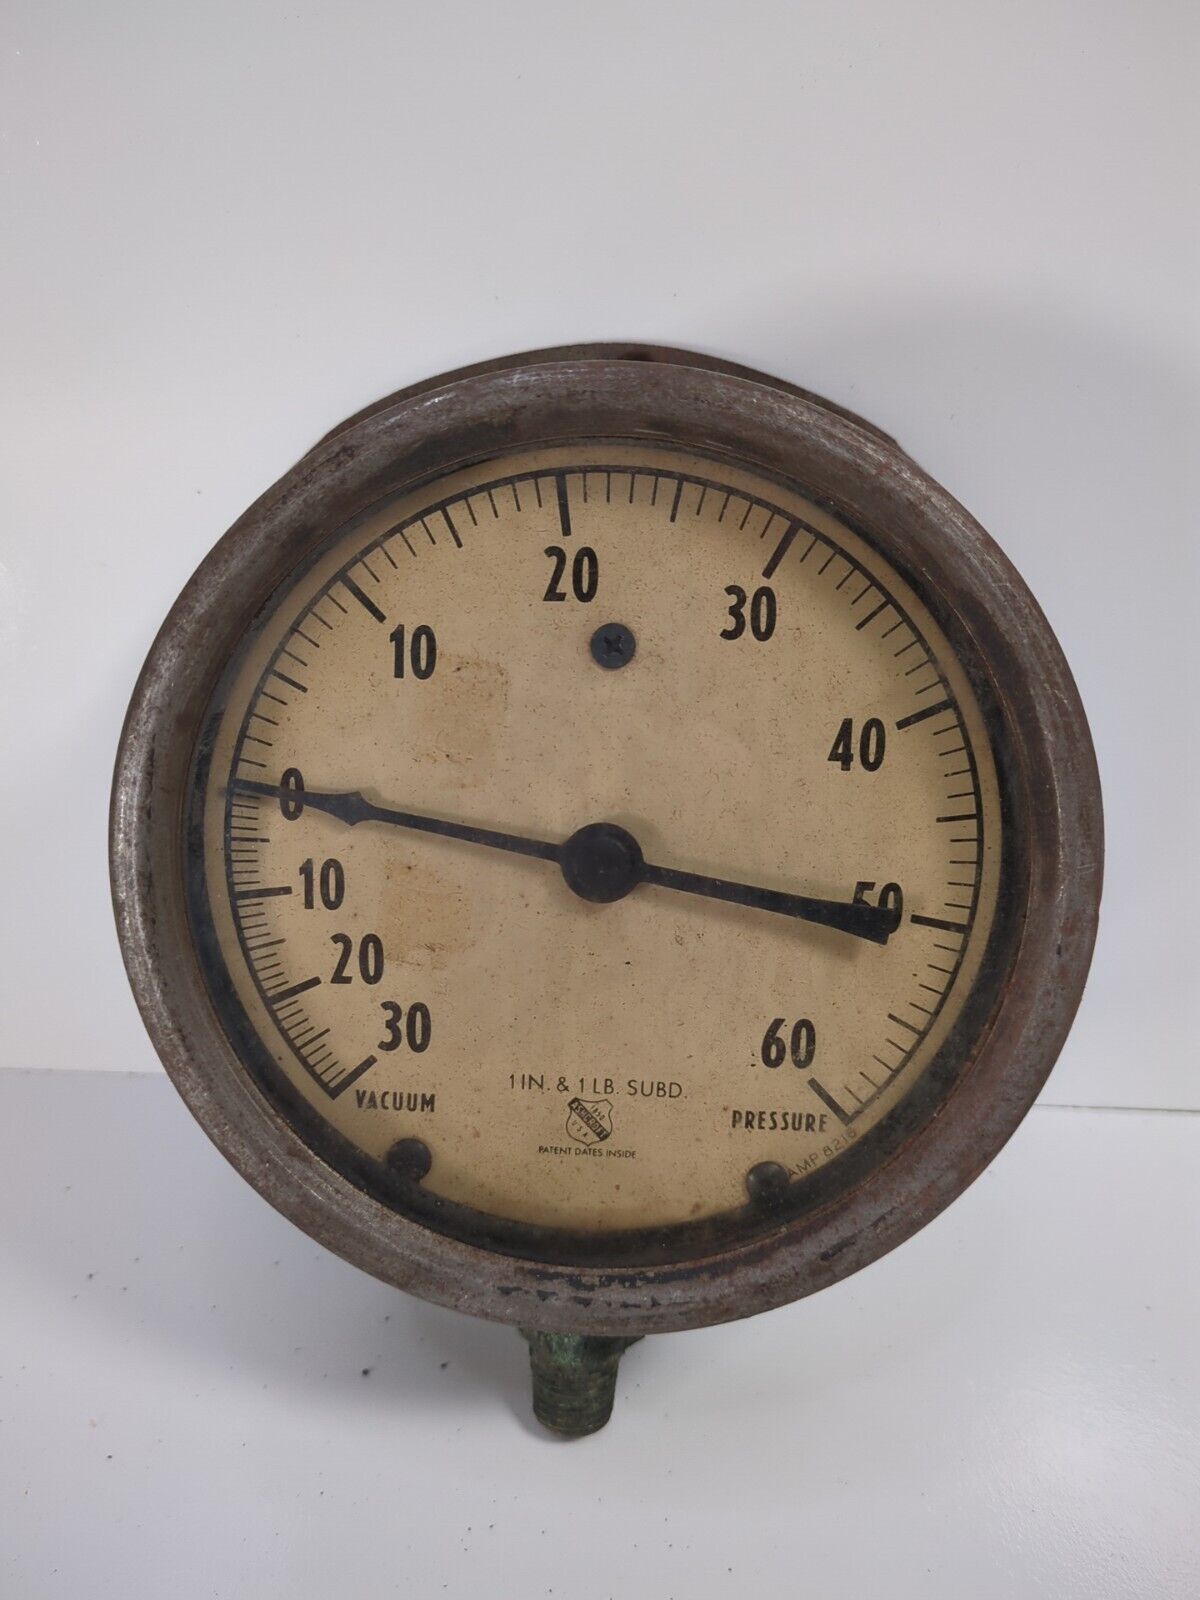 Vintage Ashcroft Vacuum Pressure Gauge 0-30vac. 0-60 PSI 1in. & 1lb. Subd.